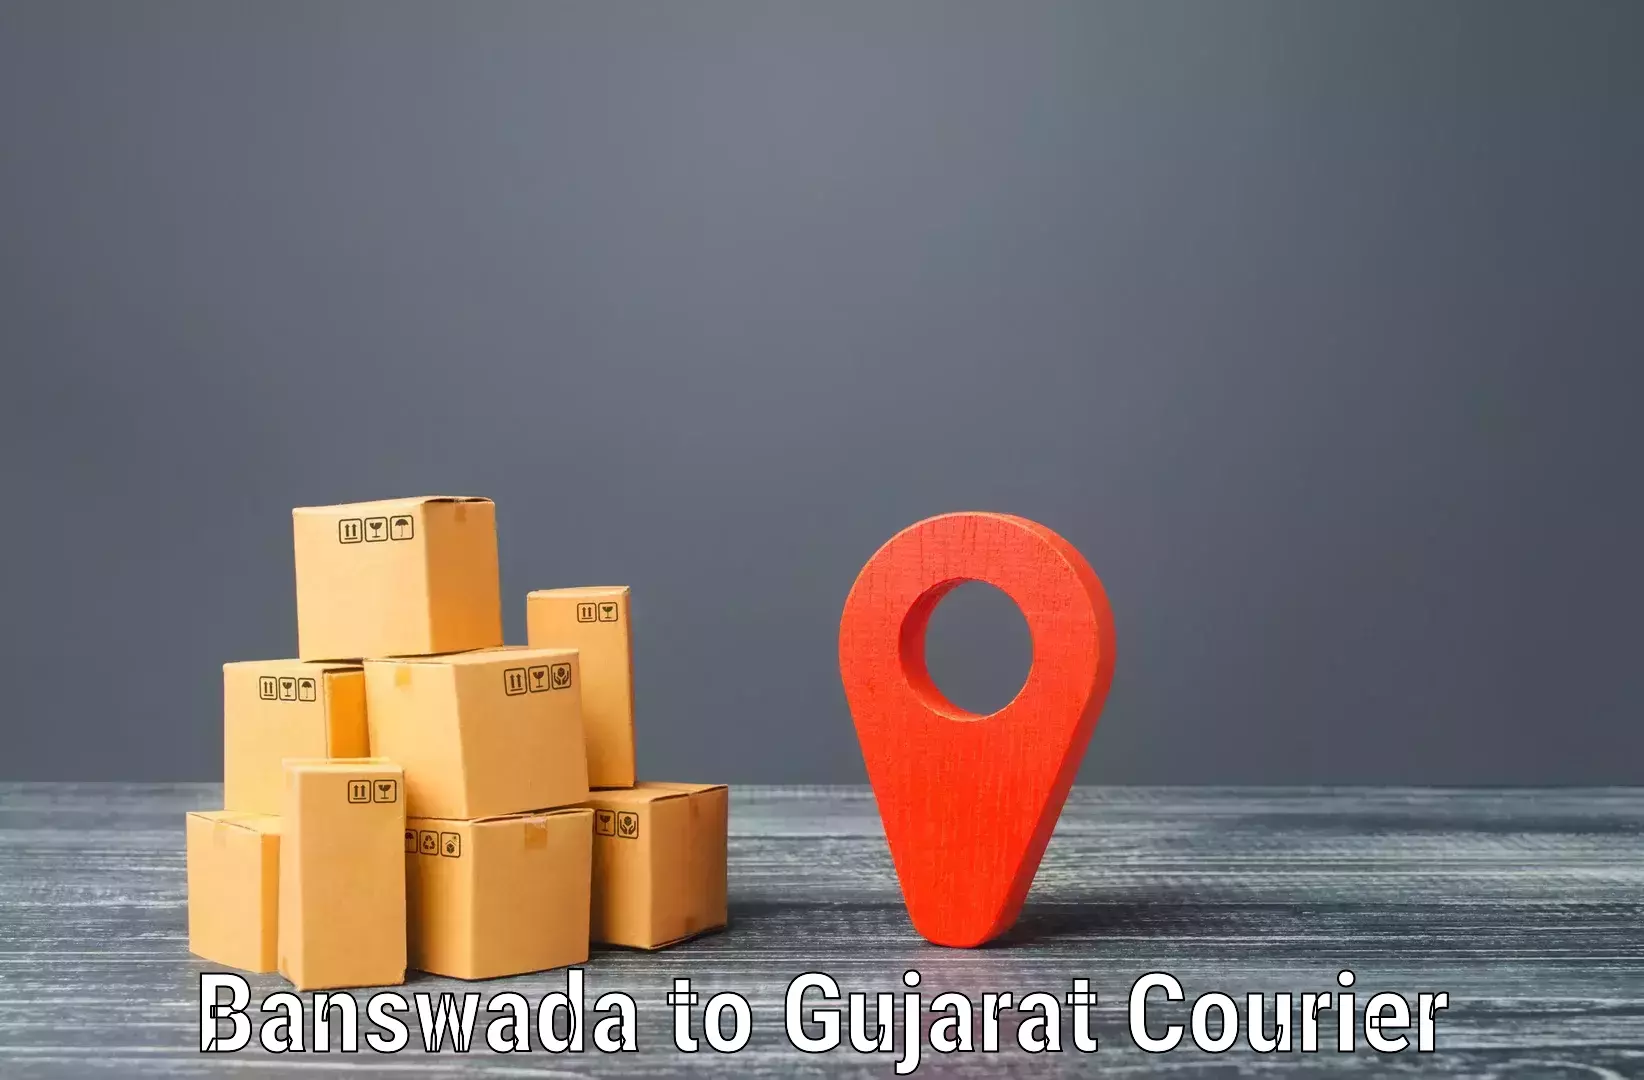 Affordable shipping rates in Banswada to Mahuva